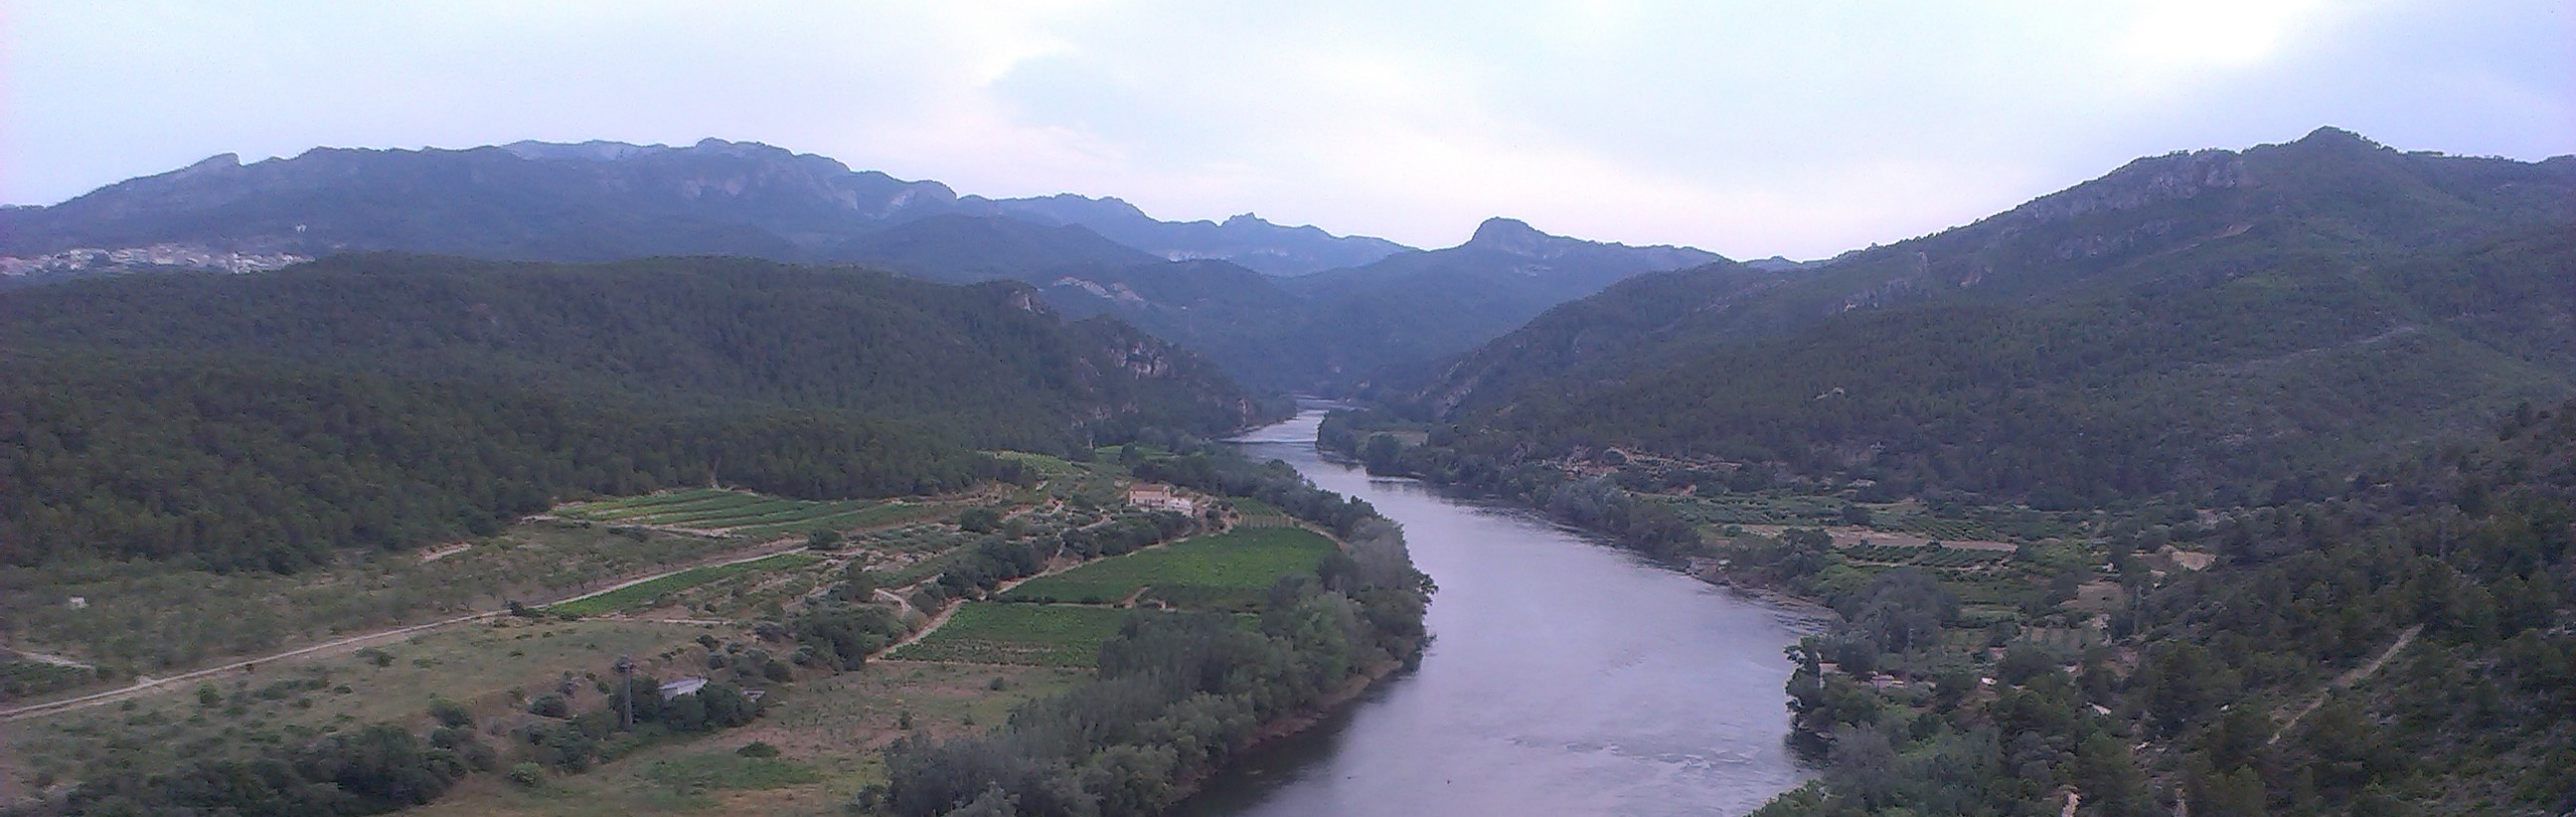 La consulta pública del Plan Hidrológico del Ebro se cierra con una alta participación en las acciones organizadas por la CHE